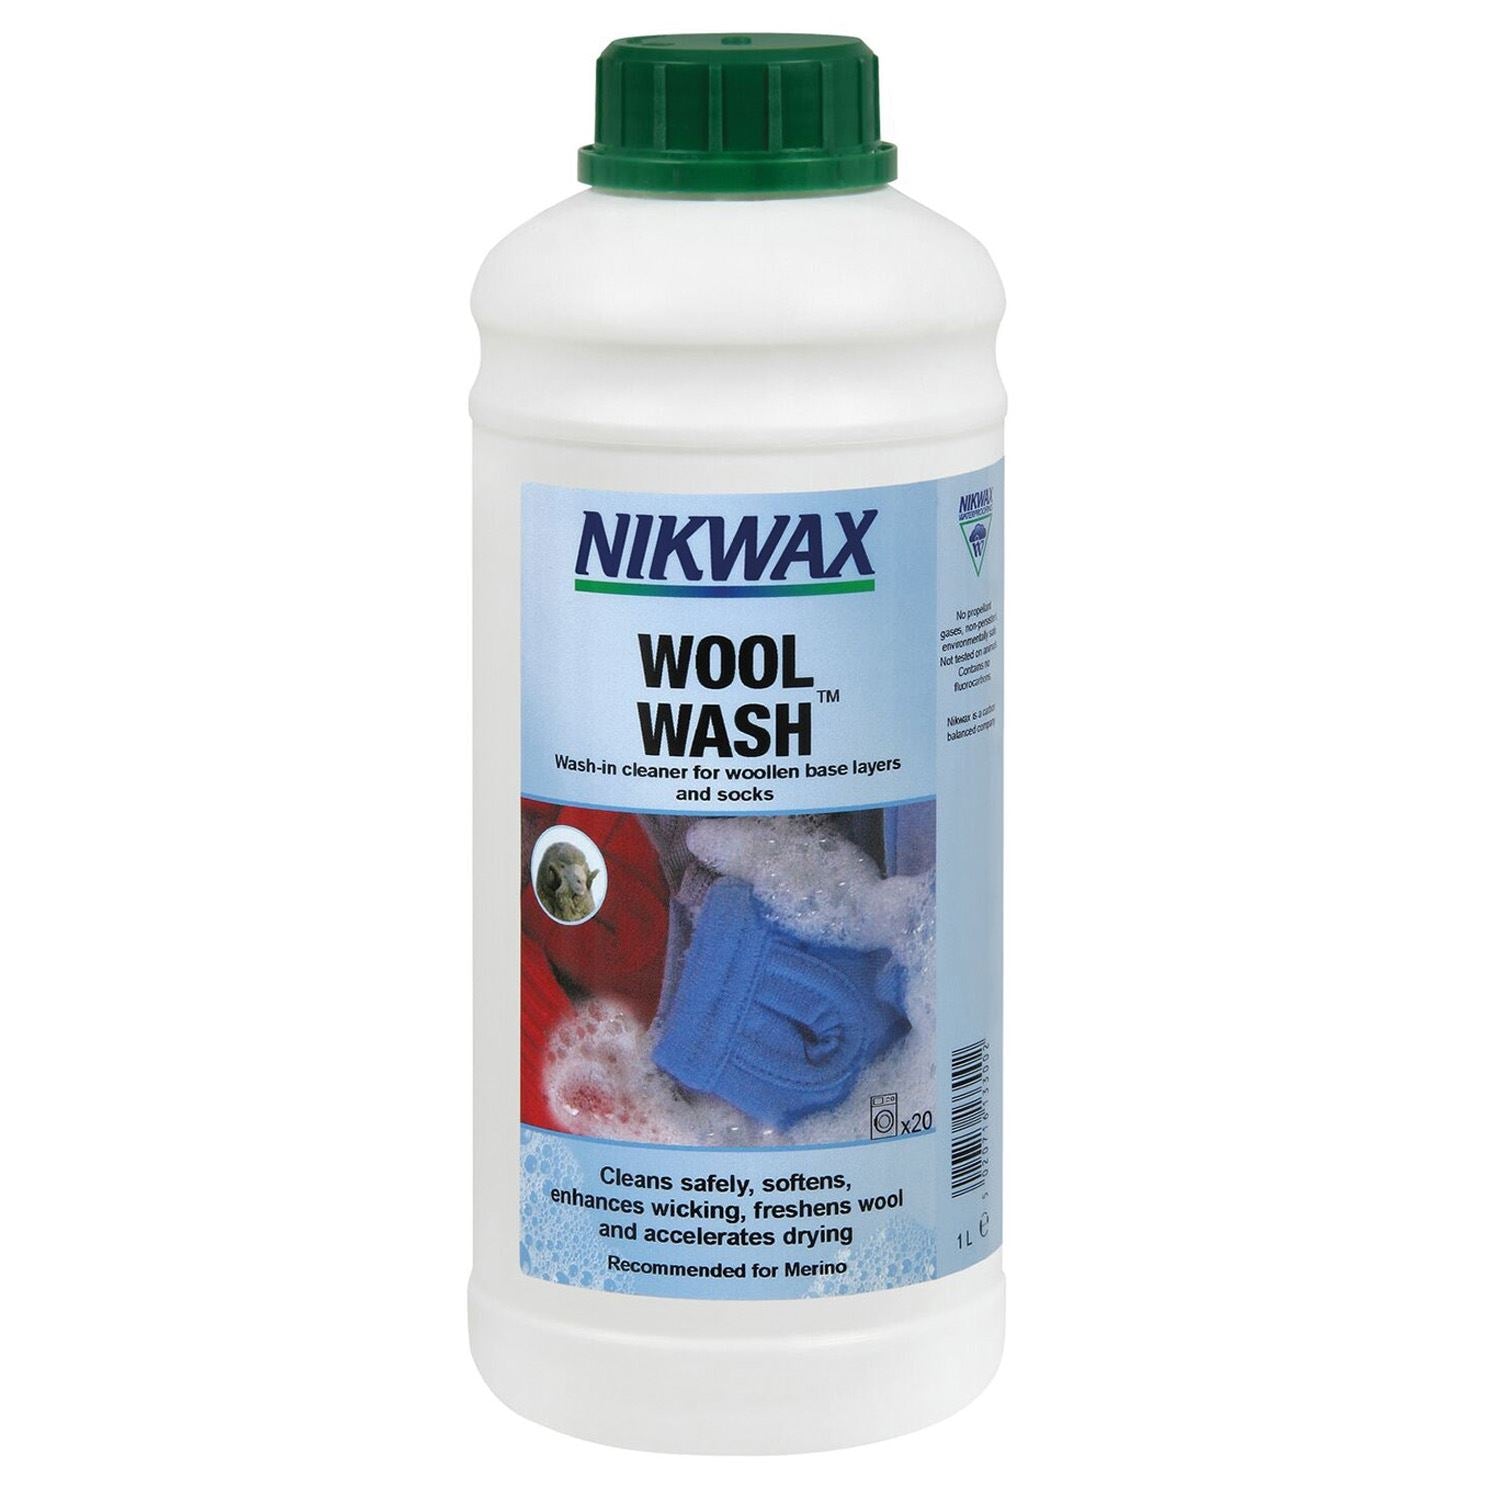 Nikwax Wool Wash - Just Horse Riders